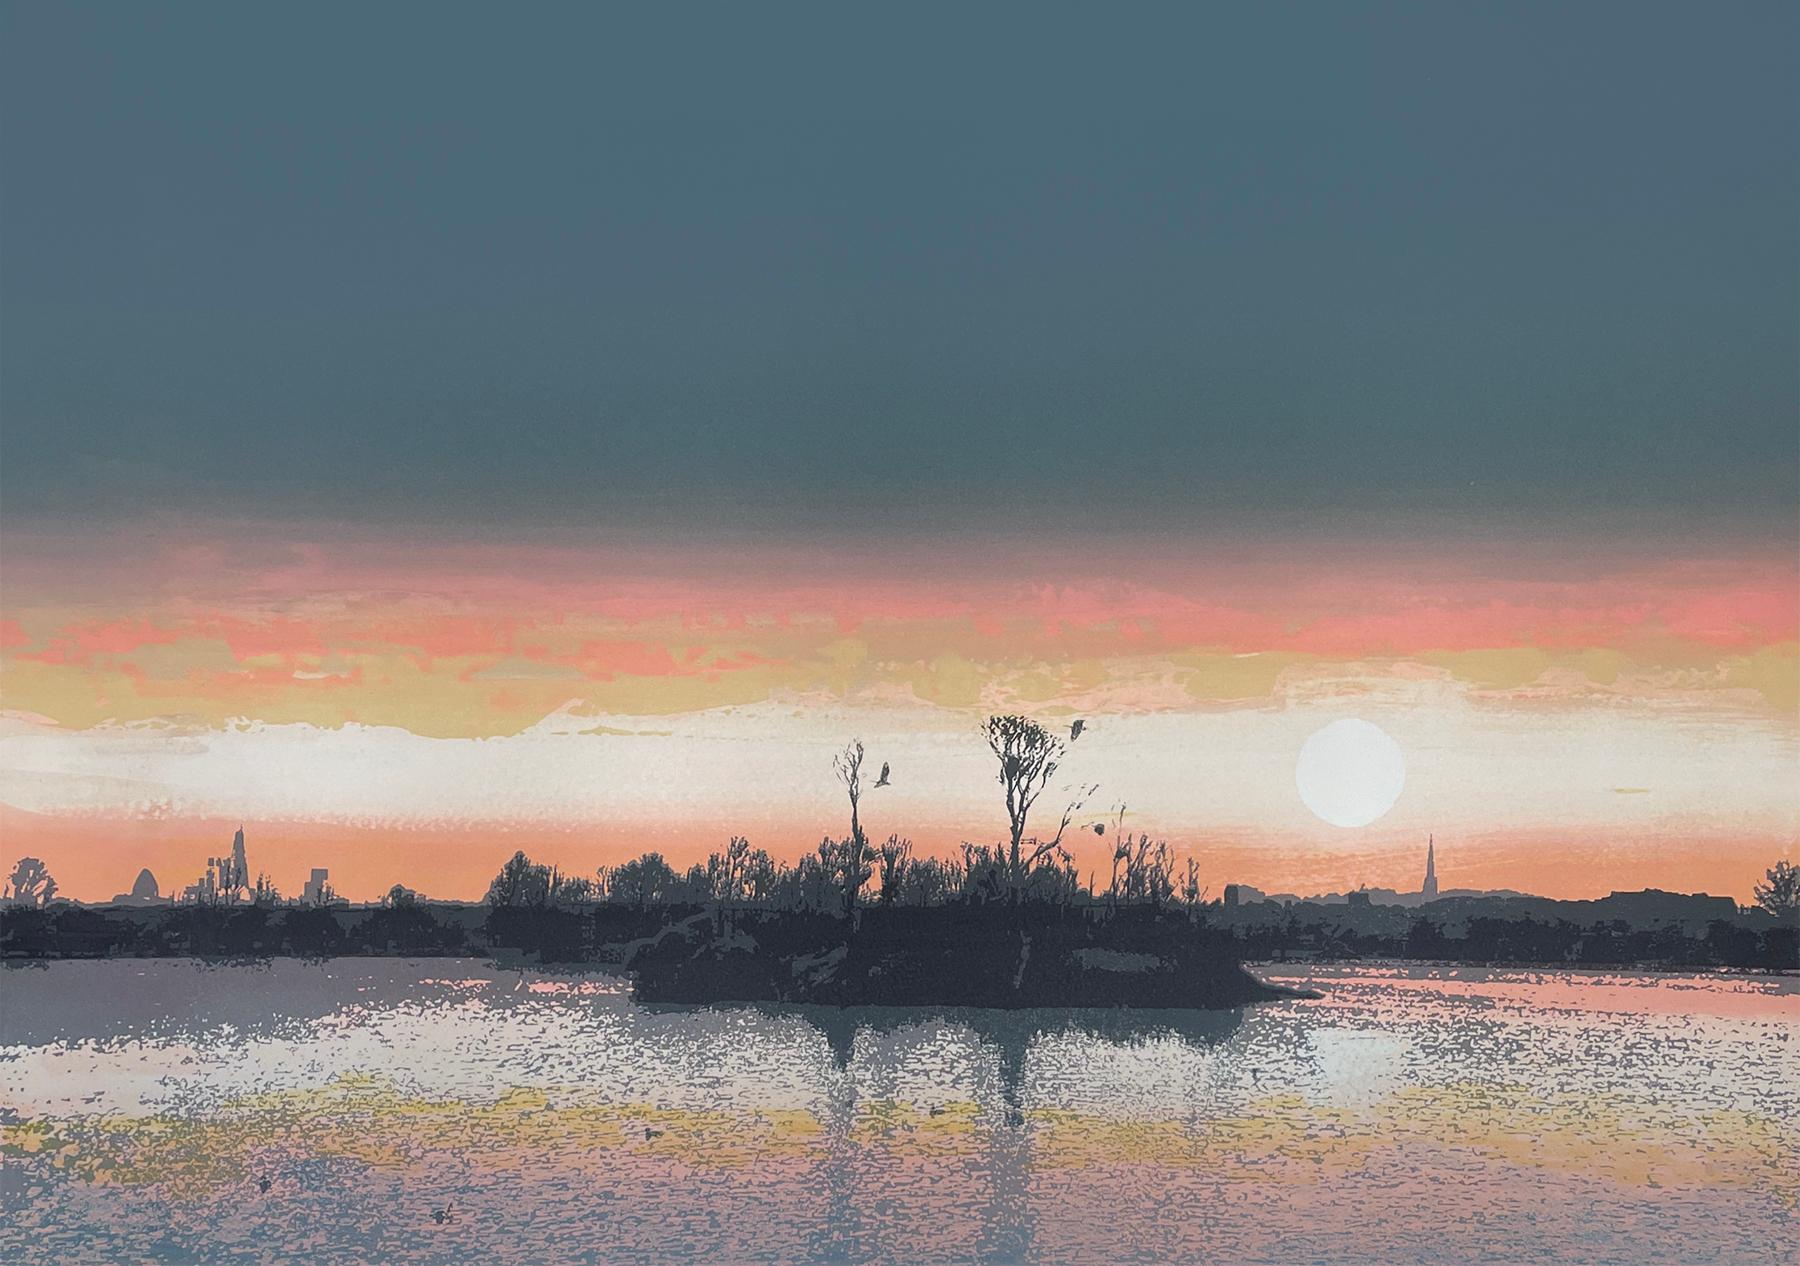 Landscape Print Emma Reynolds - Winter Sun at Walthamstow Wetlands, paysage imprimé, édition limitée